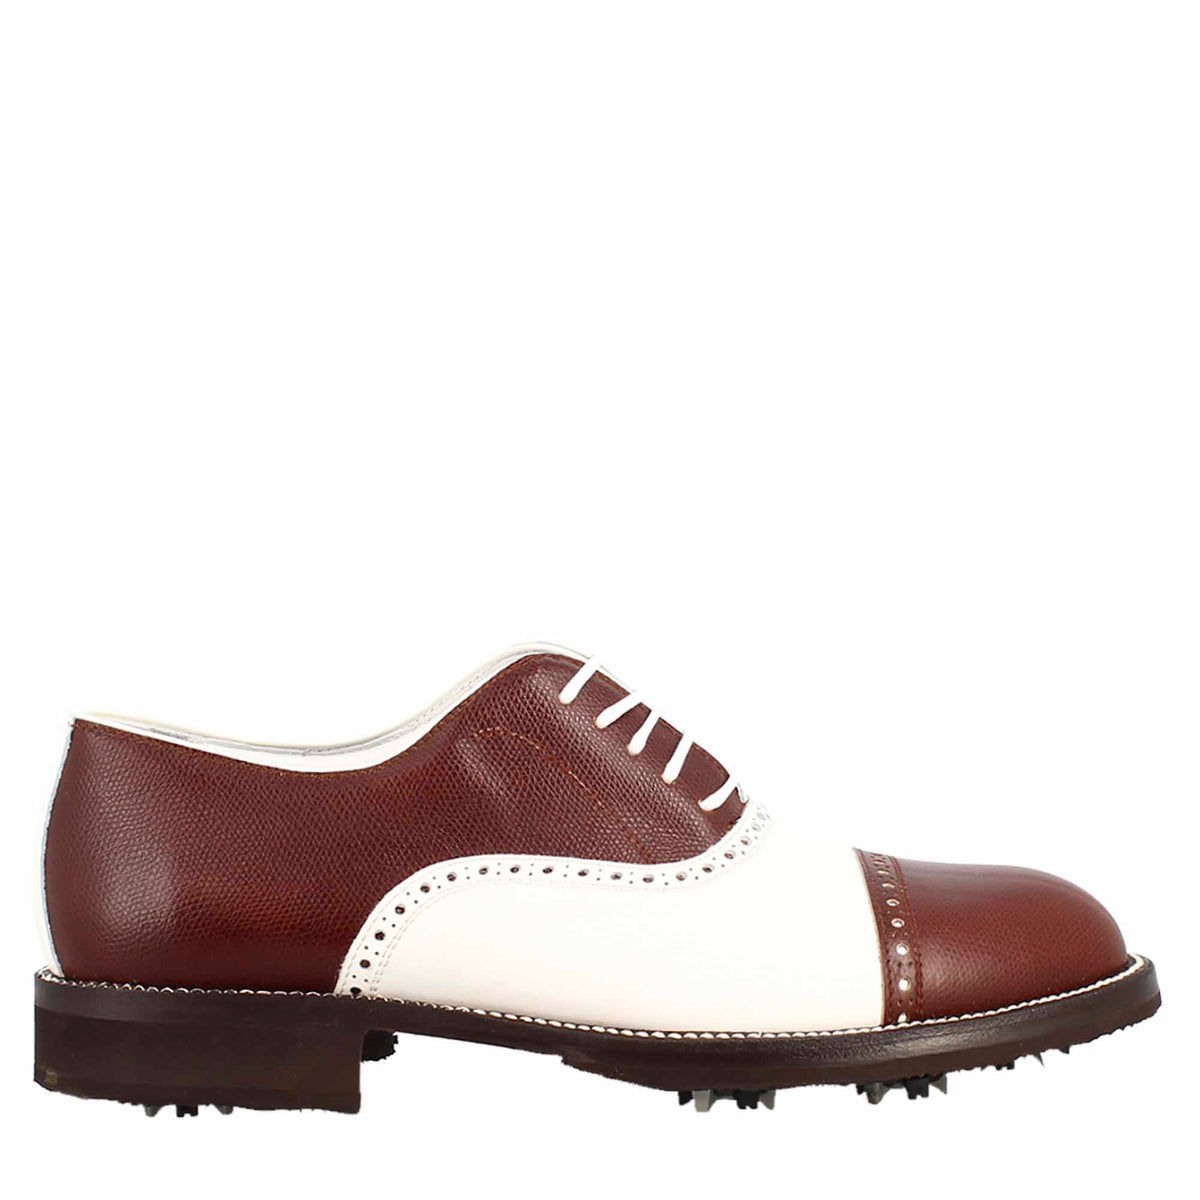 Chaussures de golf LRP pour homme en cuir blanc et marron, fabriquées à la main, avec des détails de broderie